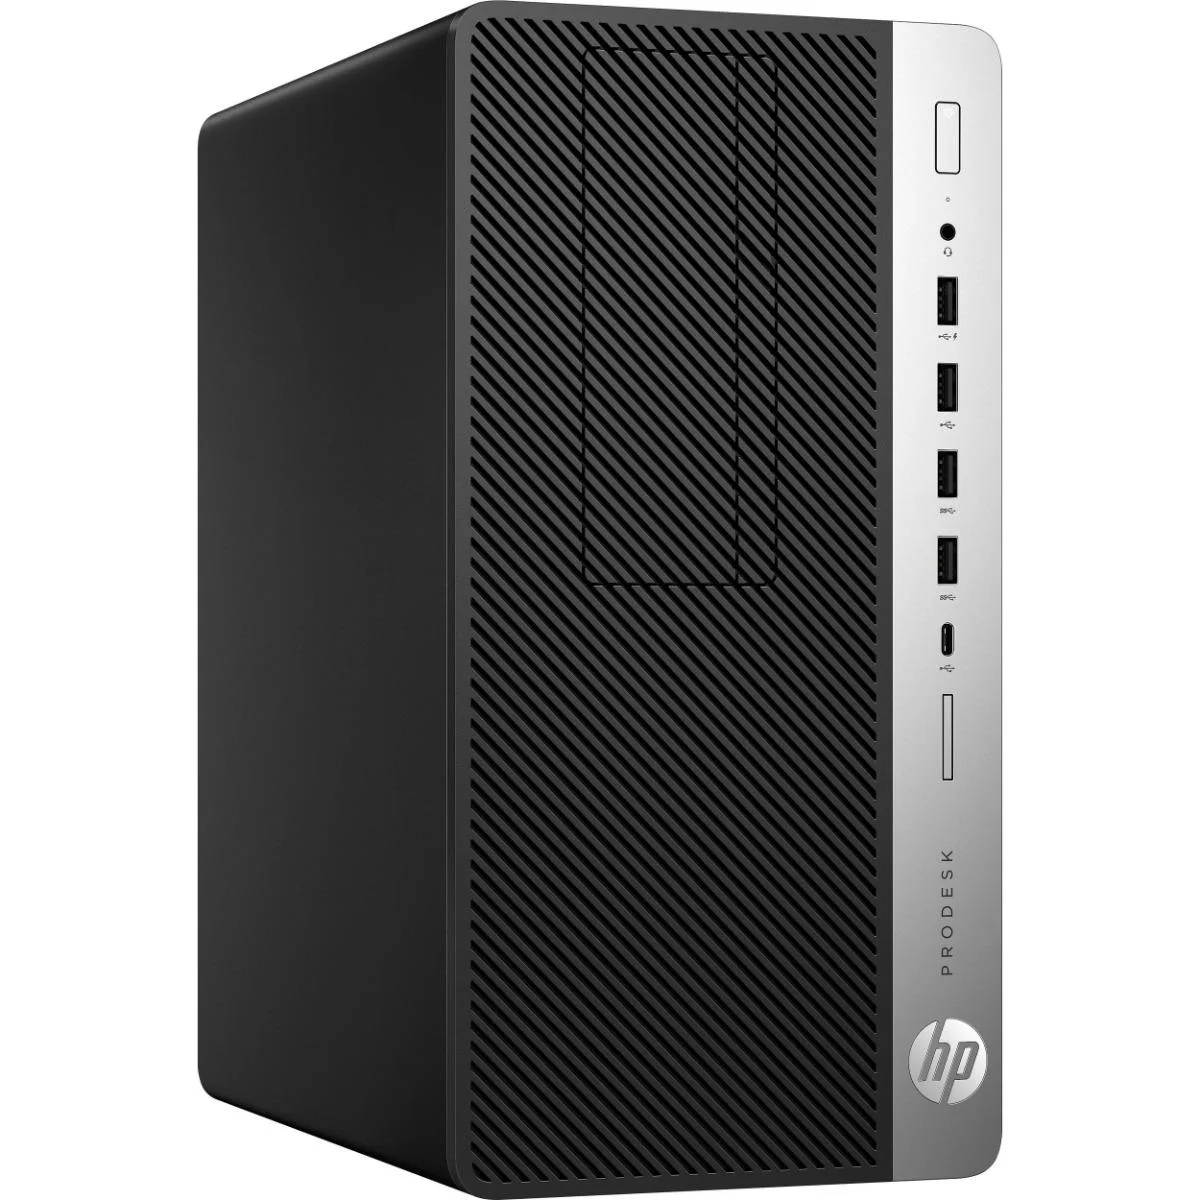 HP ProDesk 600 G4 Tower Desktop PC